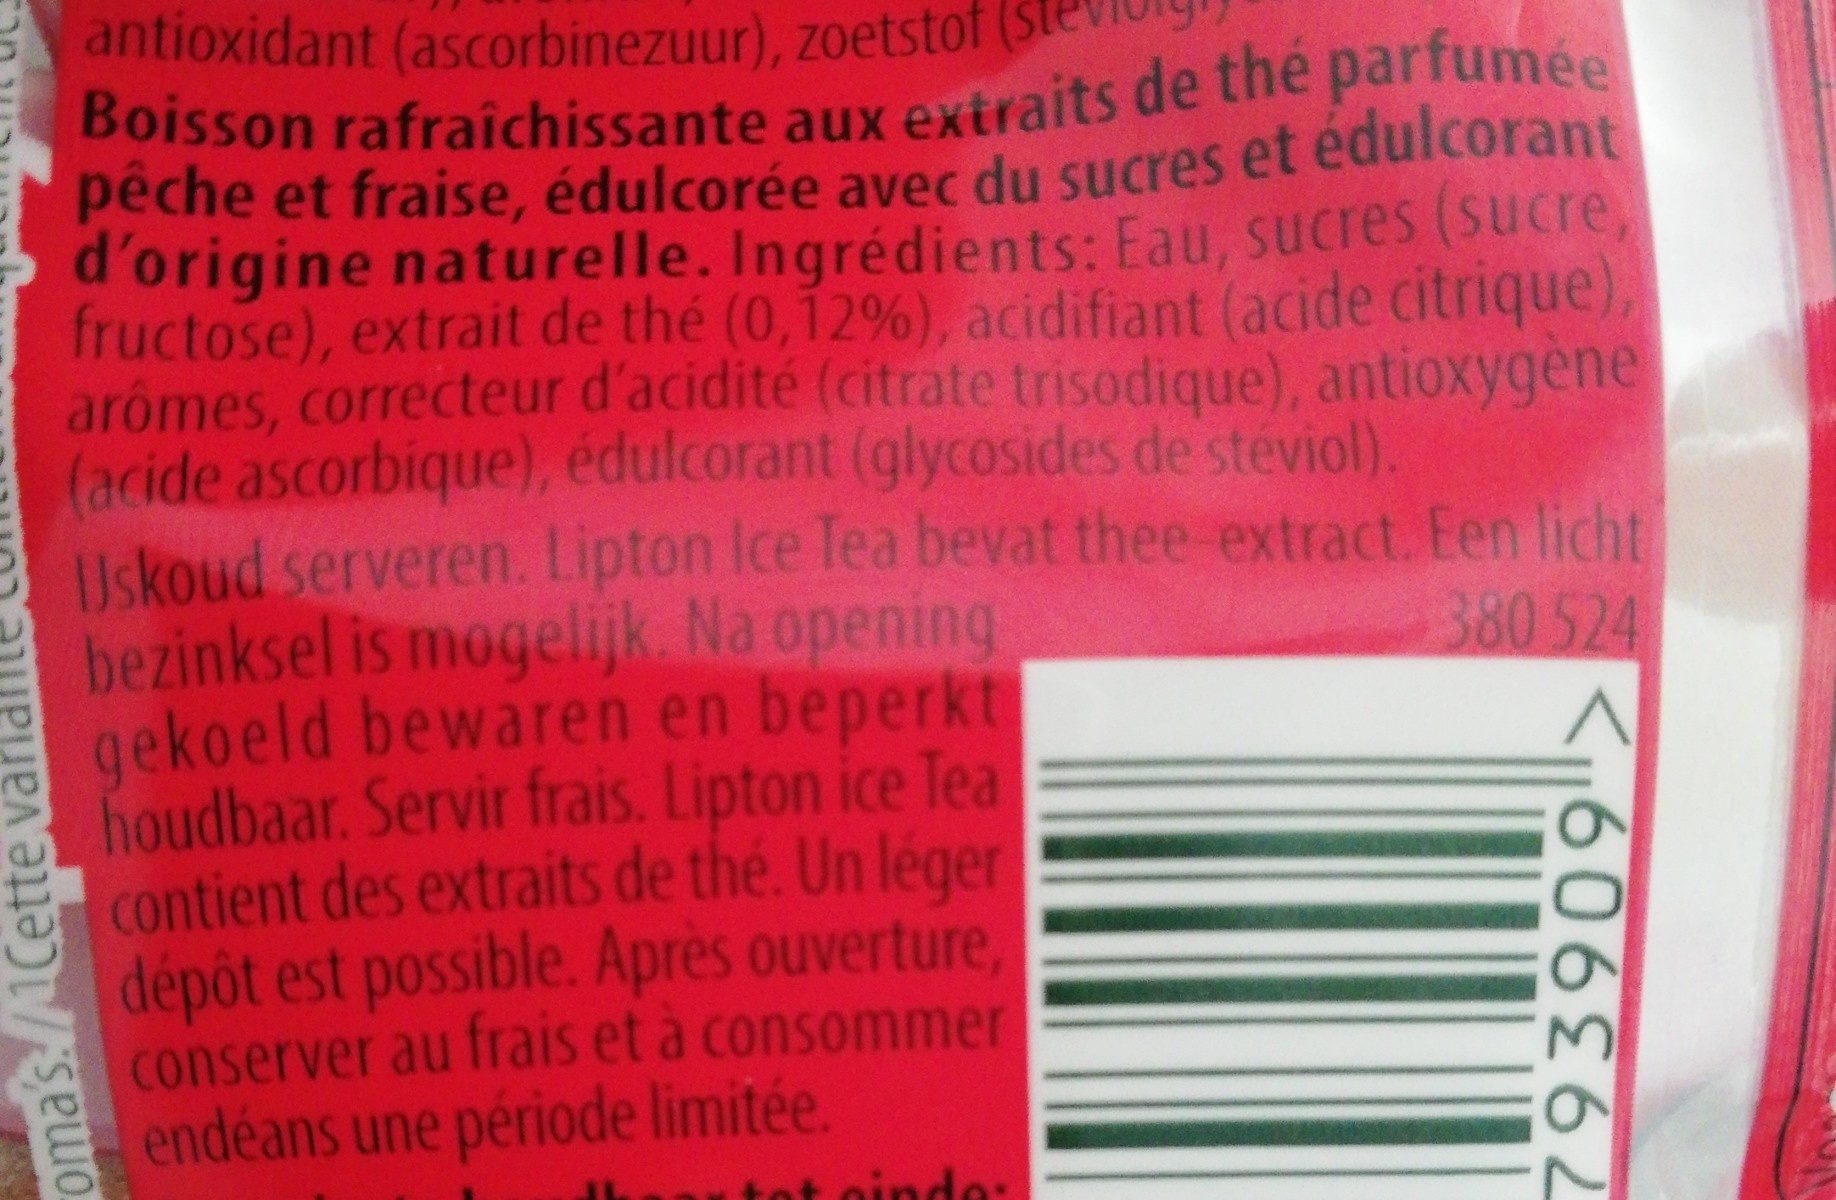 Ice Tea Pêche-Fraise - Ingrediënten - fr